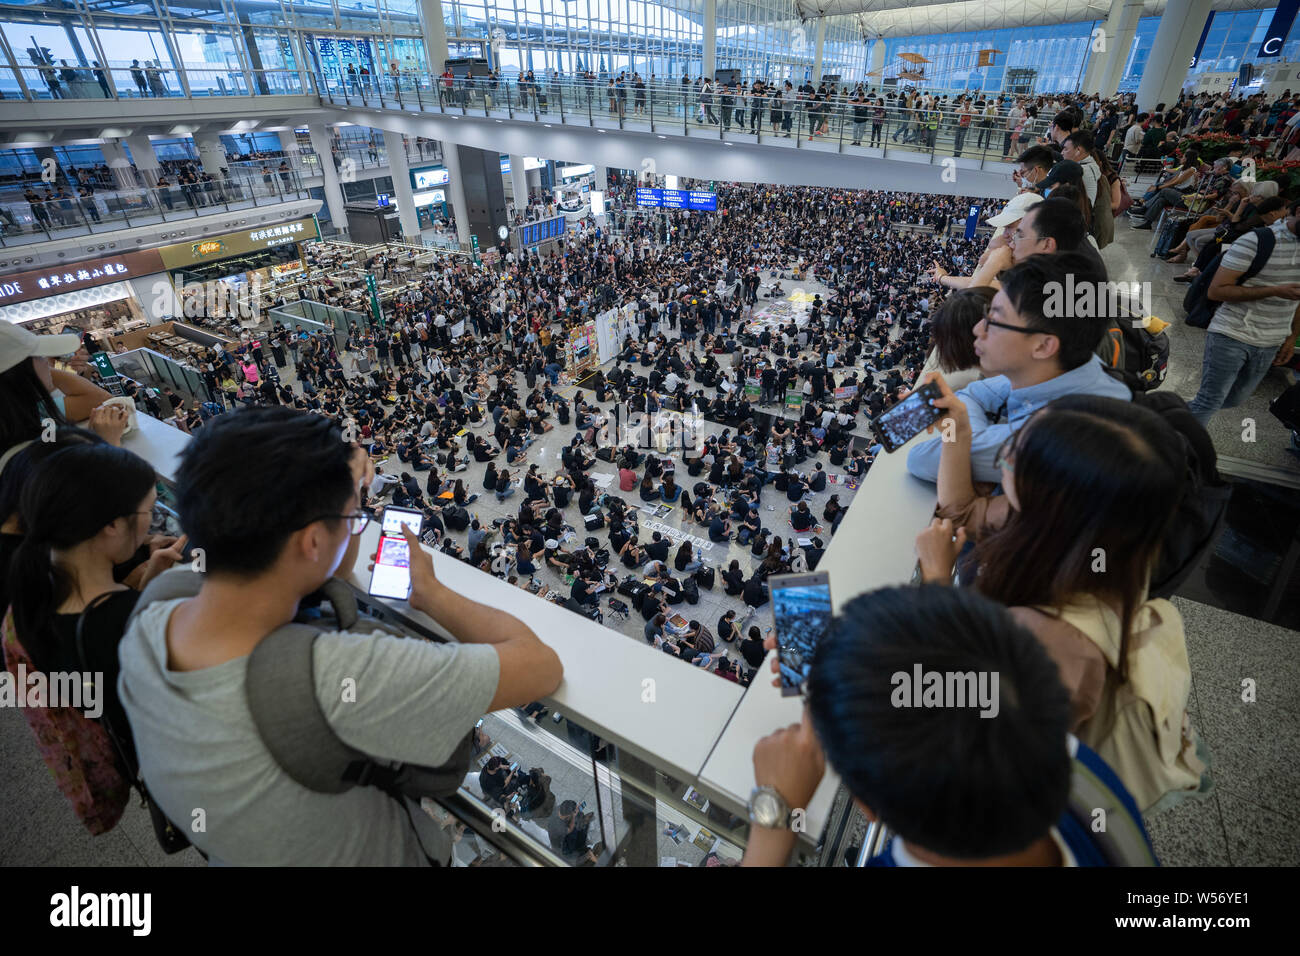 Touristen vom Festland China verwenden ihr Handy Bild zu nehmen, wie tausende Demonstranten einen Protest an der Hong Kong International Airport Ankunft Halle sitzen. Tausende von Demonstranten gegen die Regierung inszenierten einen Protest an der Hong Kong International Airport terminal Sitzen, das erste von drei geraden Tagen Demonstrationen nach Auseinandersetzungen in der vergangenen Woche ausgelöst wird befürchtet, dass eine breitere Auseinandersetzung in der Stadt ausbrechen könnte. Stockfoto